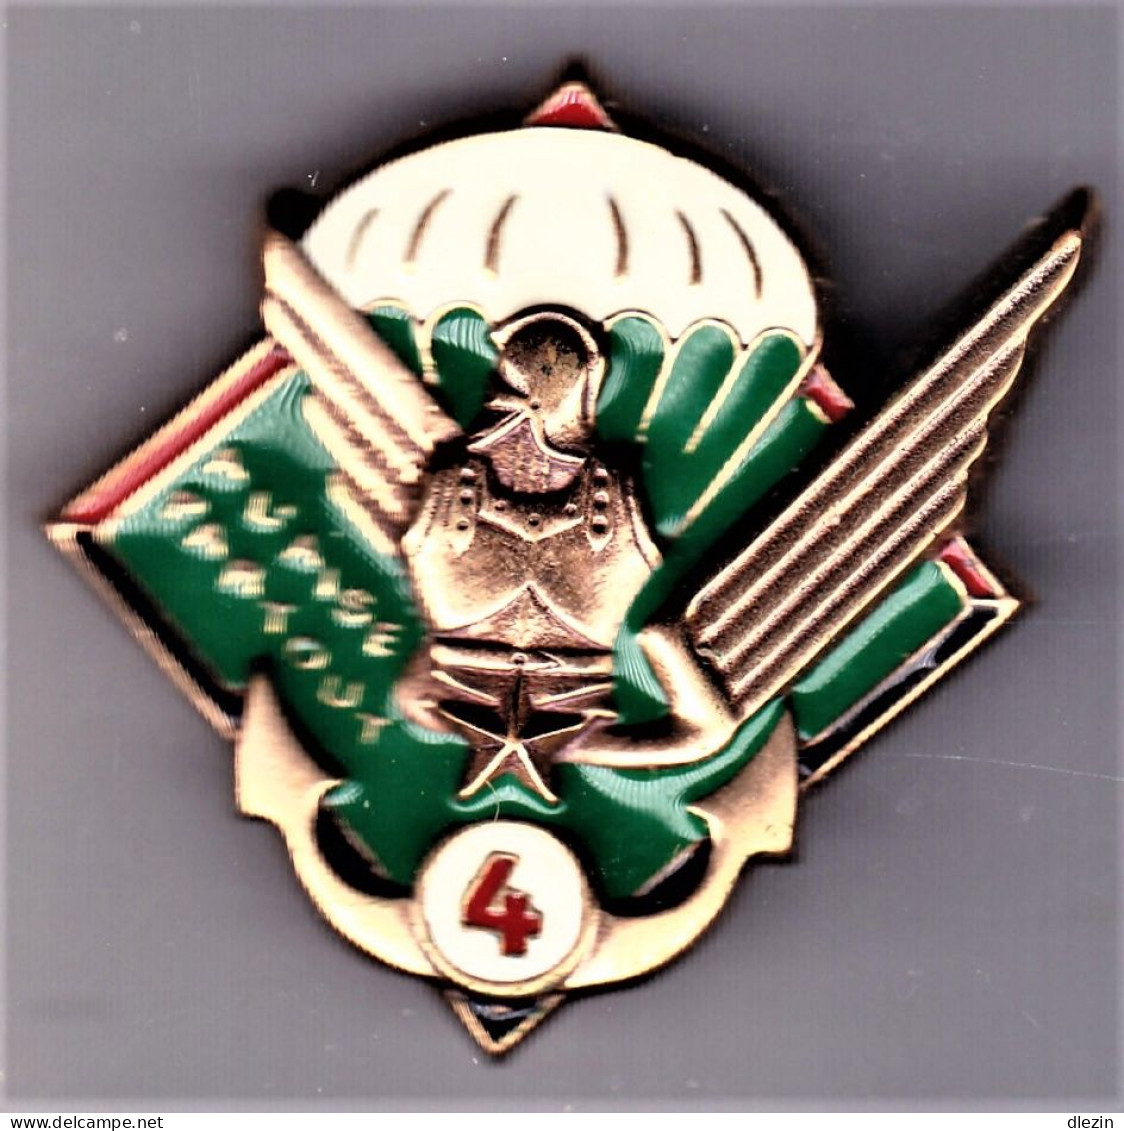 17° RGP/ 4° Cie. 17° Régiment Du Génie Parachutiste/ 4° Compagnie. SM.Leblond. - Army